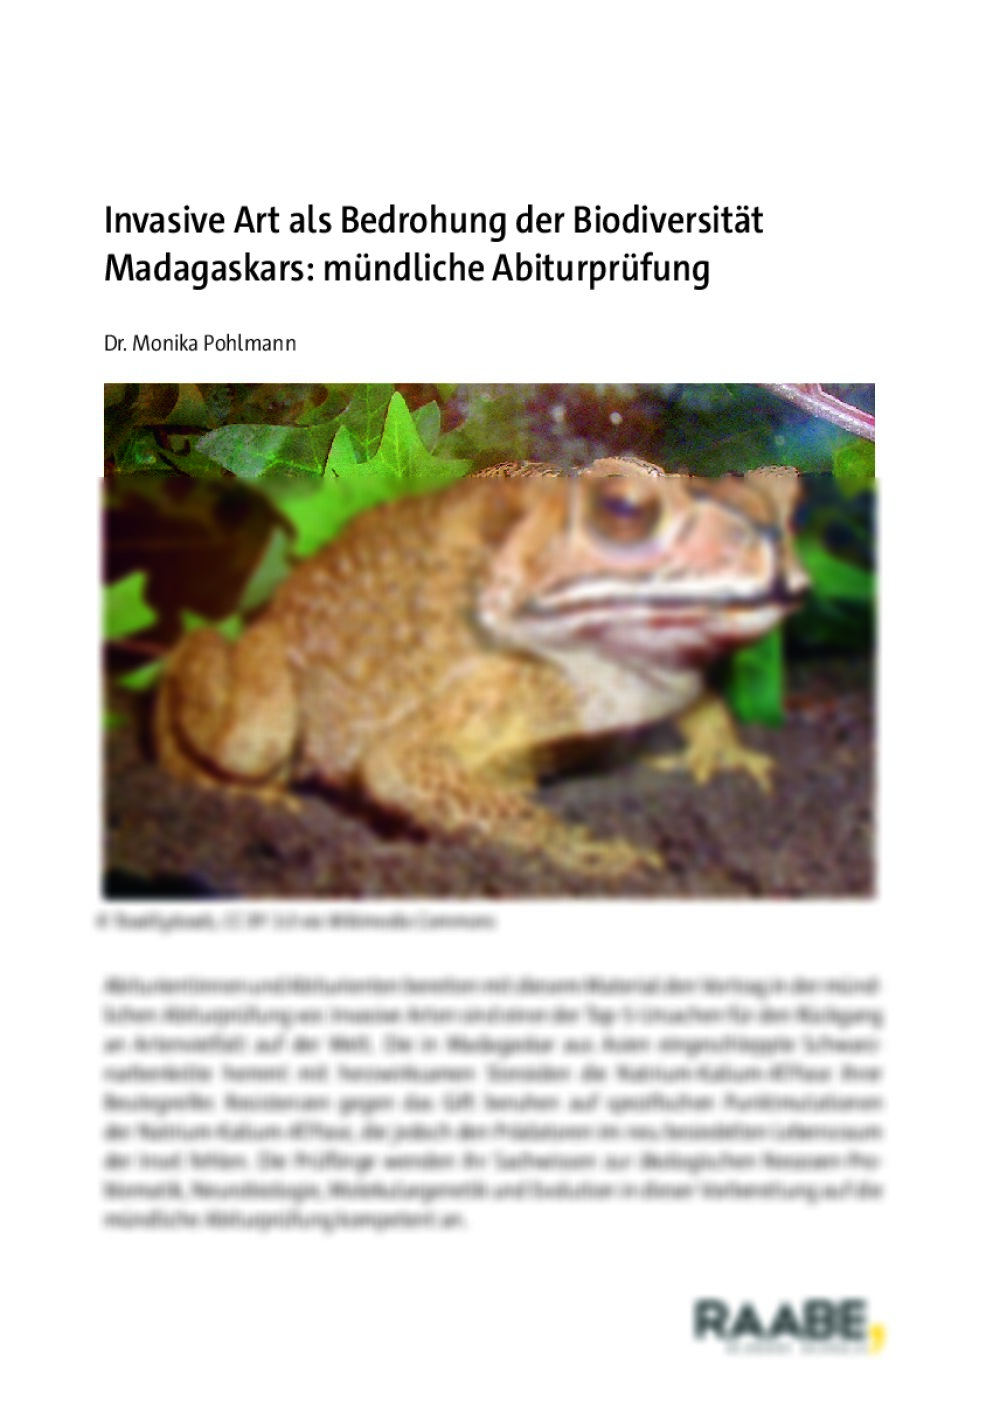 Invasive Art als Bedrohung der Biodiversität Madagaskars: mündliche Abiturprüfung  - Seite 1